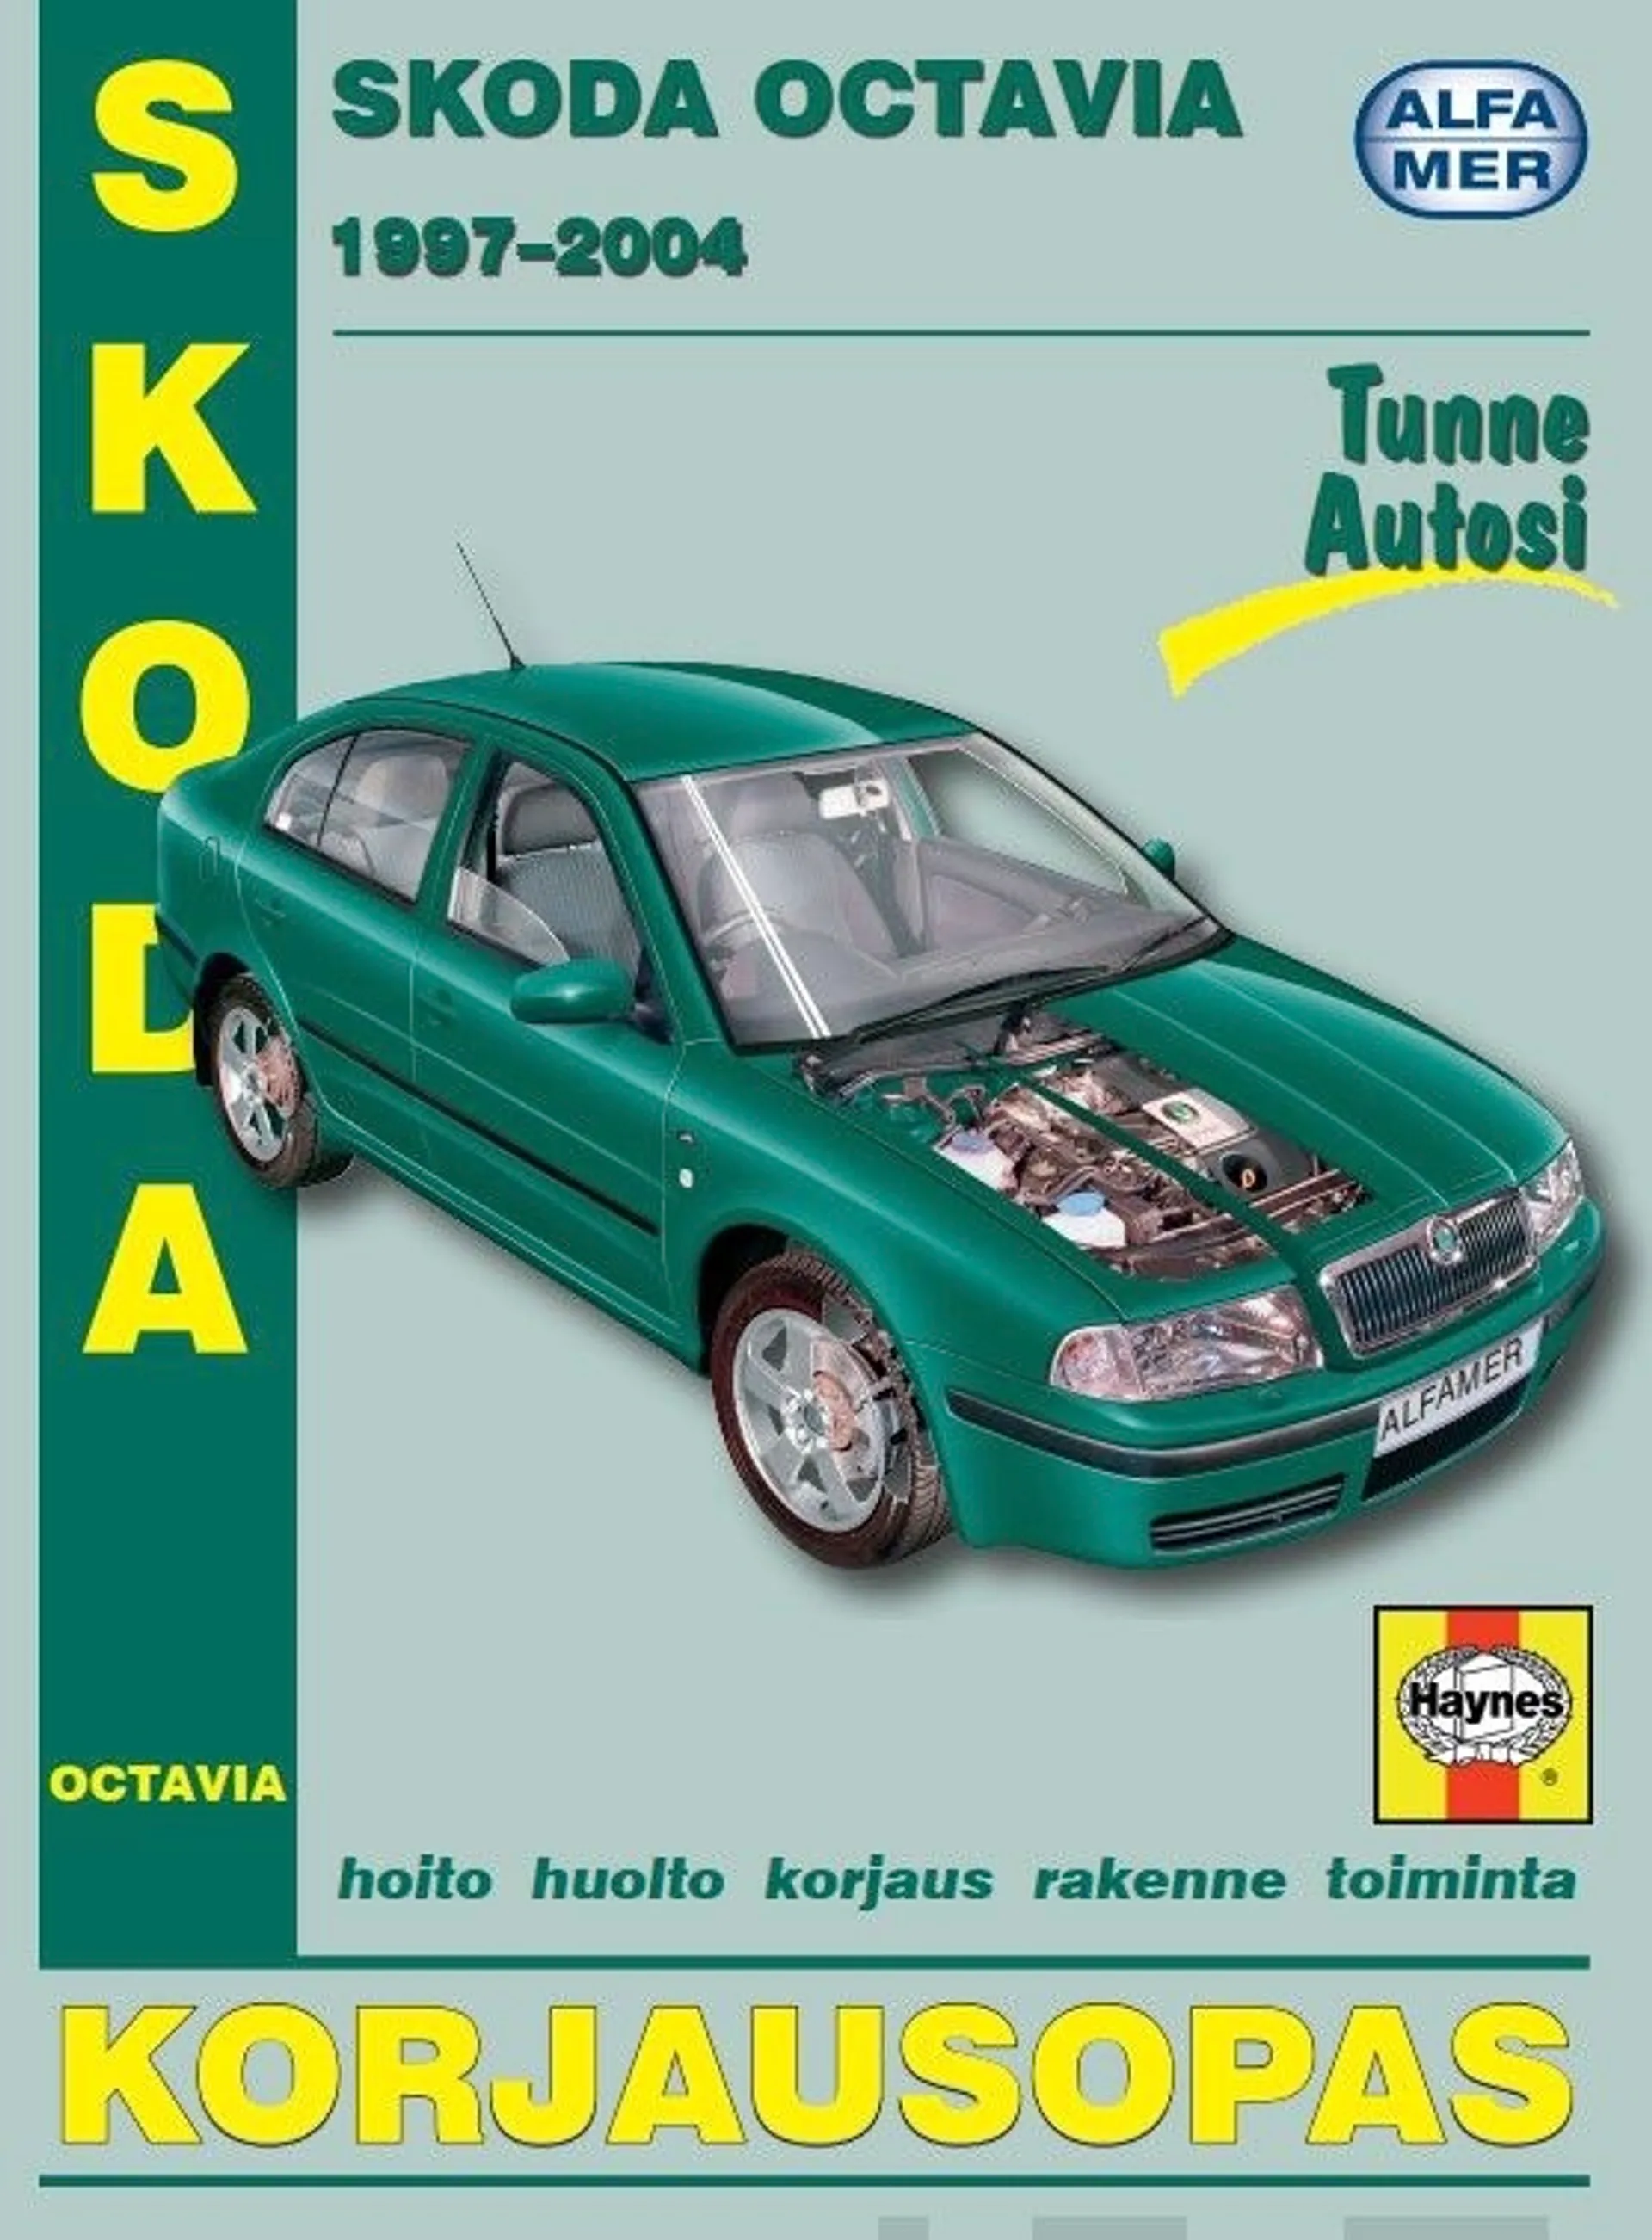 Skoda Octavia 1997-2004